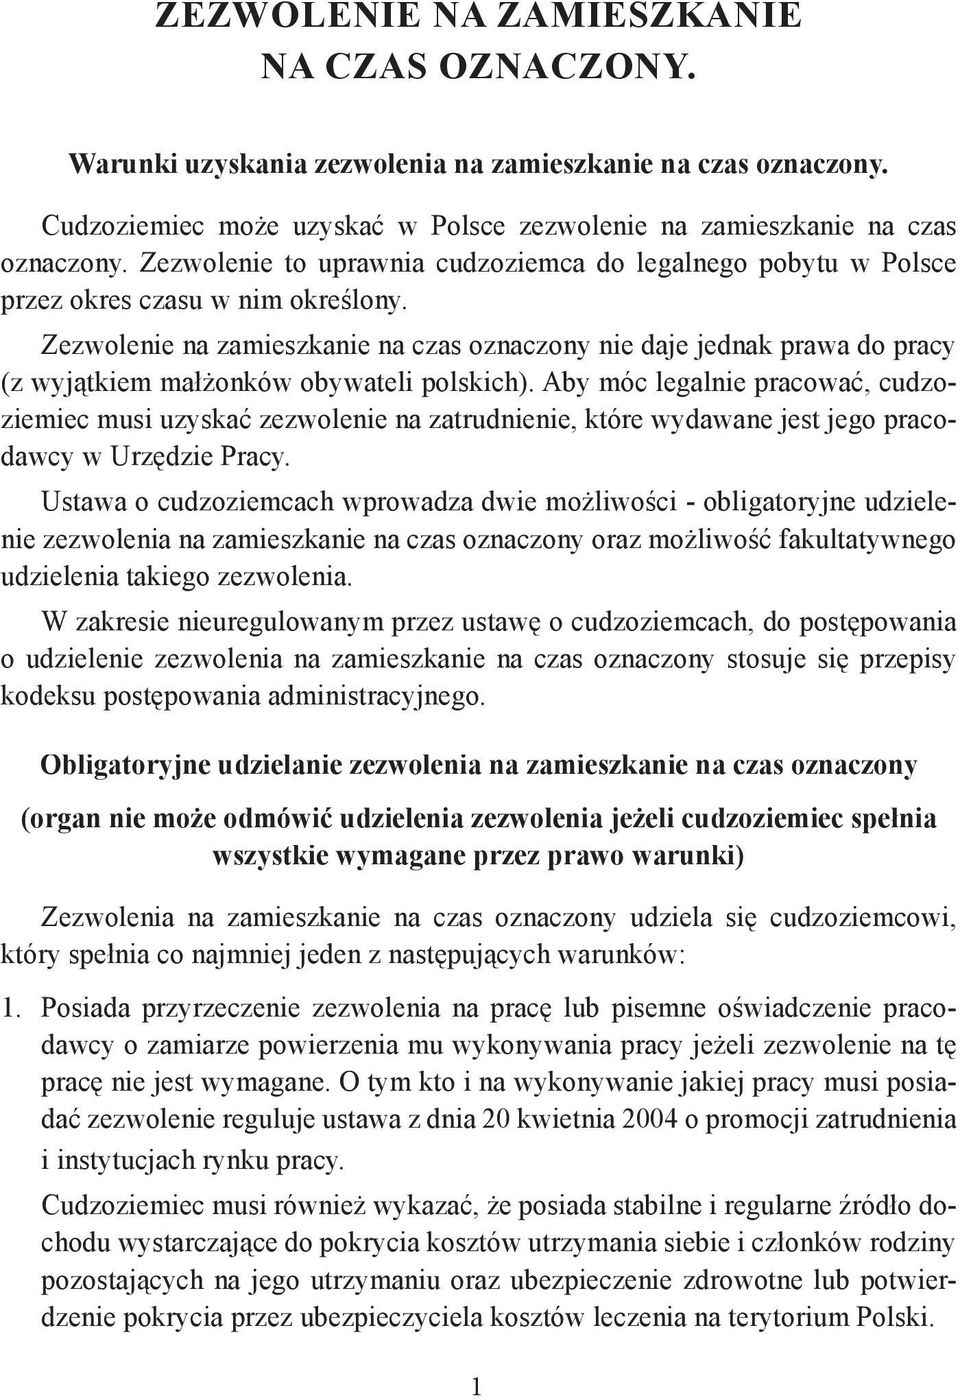 Zezwolenie na zamieszkanie na czas oznaczony nie daje jednak prawa do pracy (z wyjątkiem małżonków obywateli polskich).